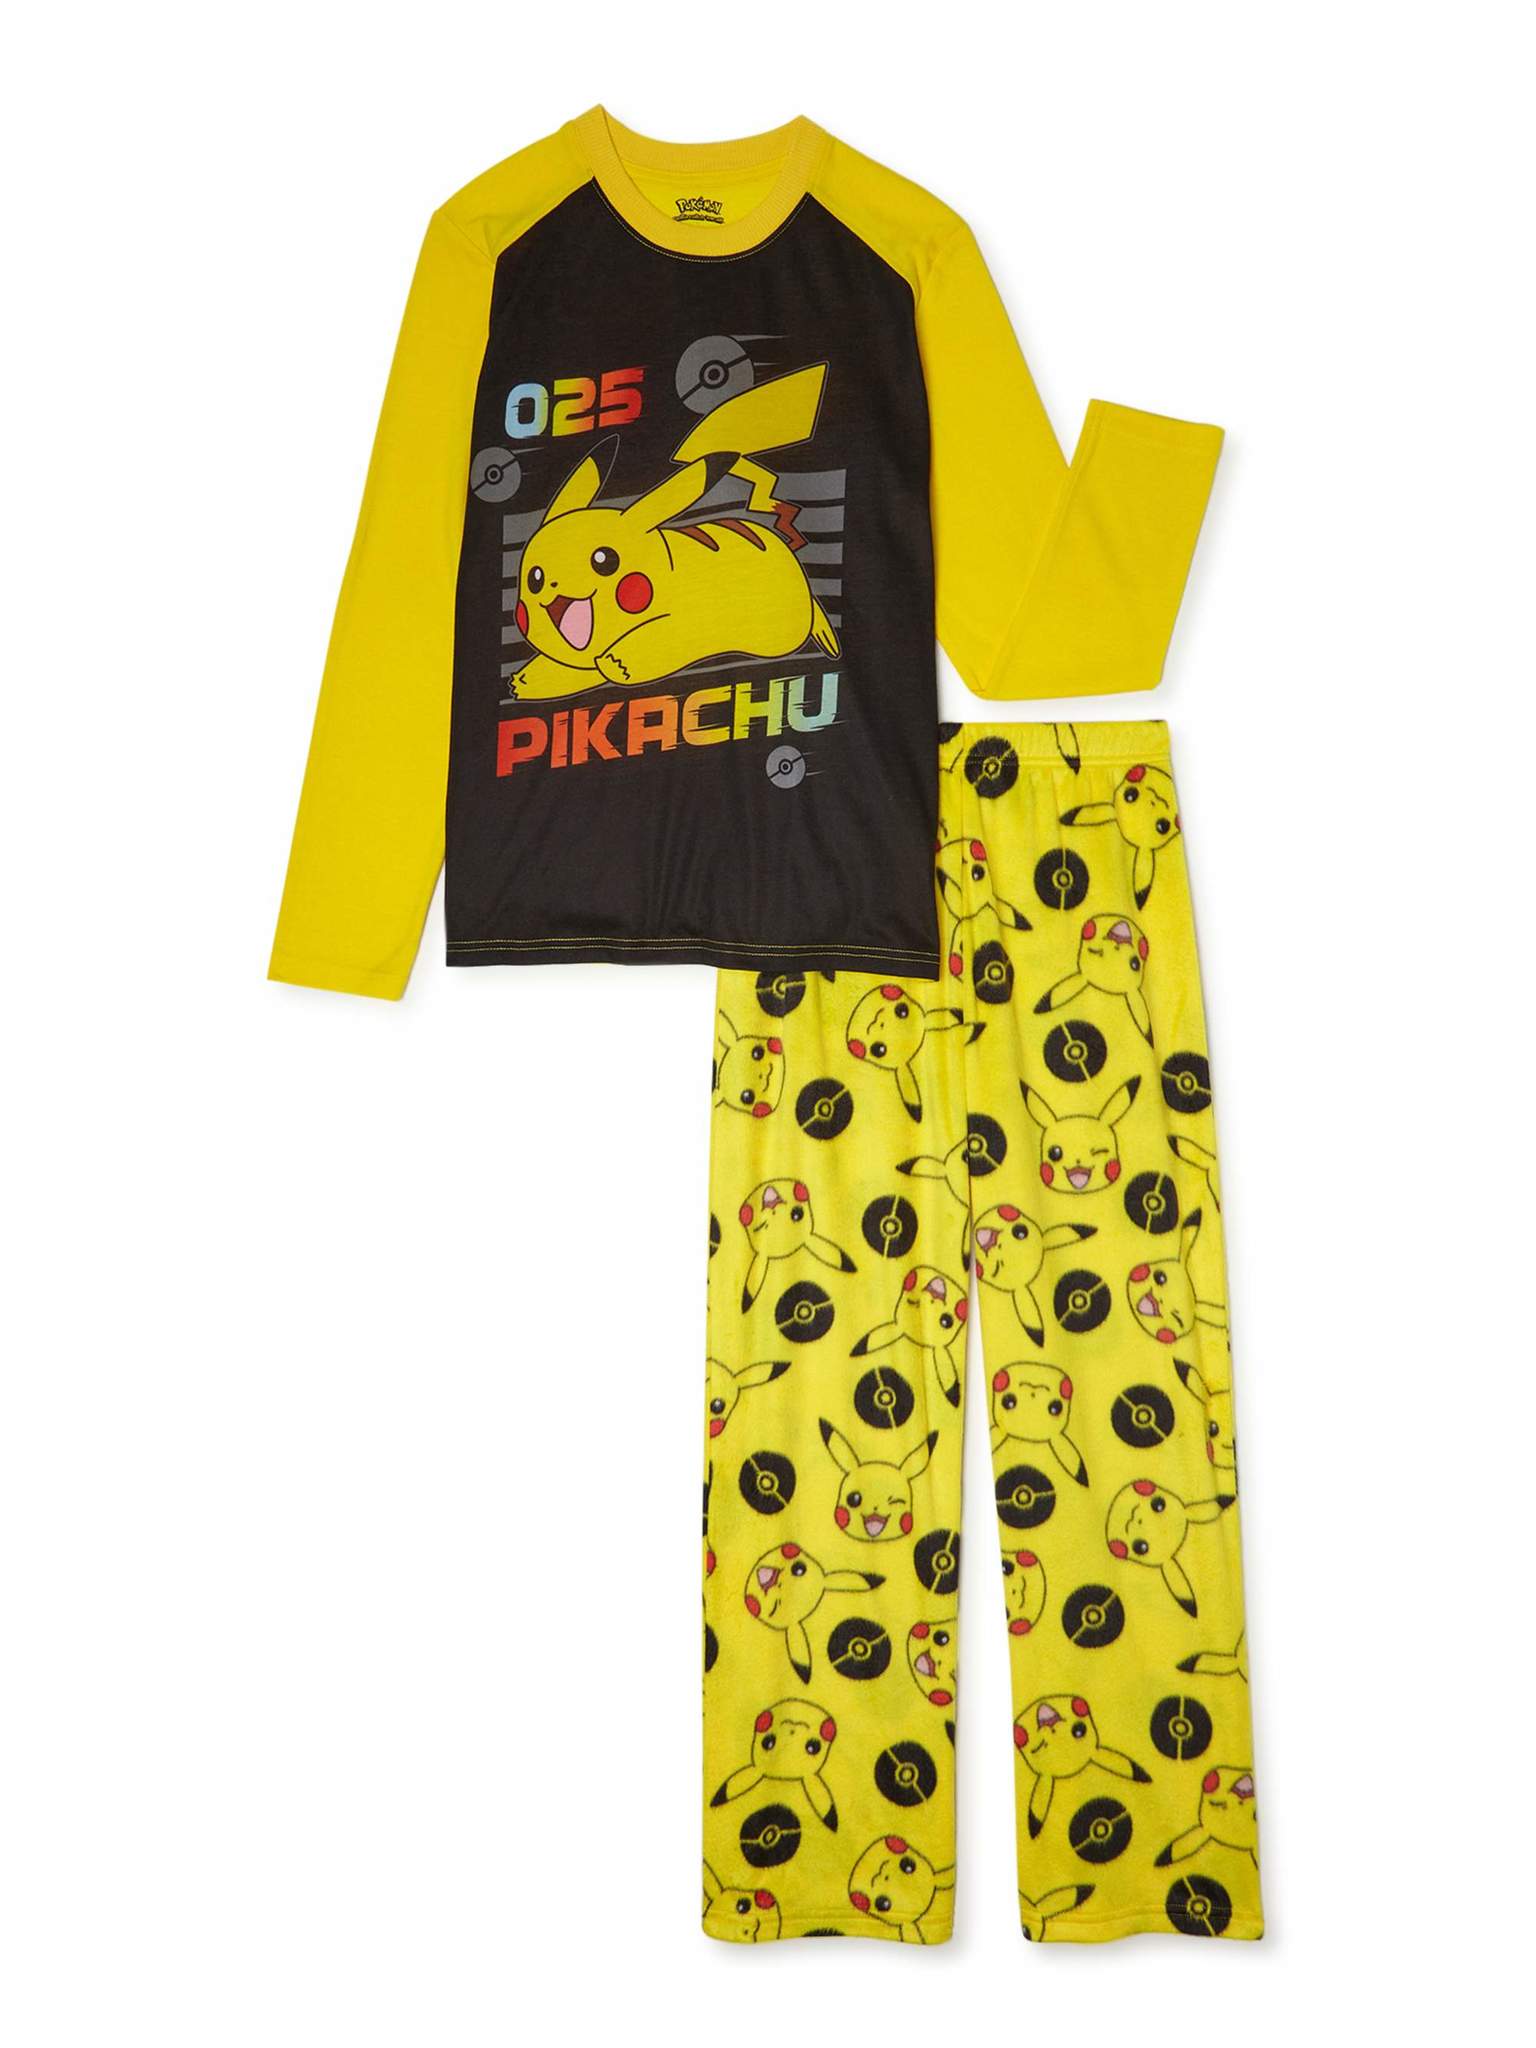 Pikachu Pajamas